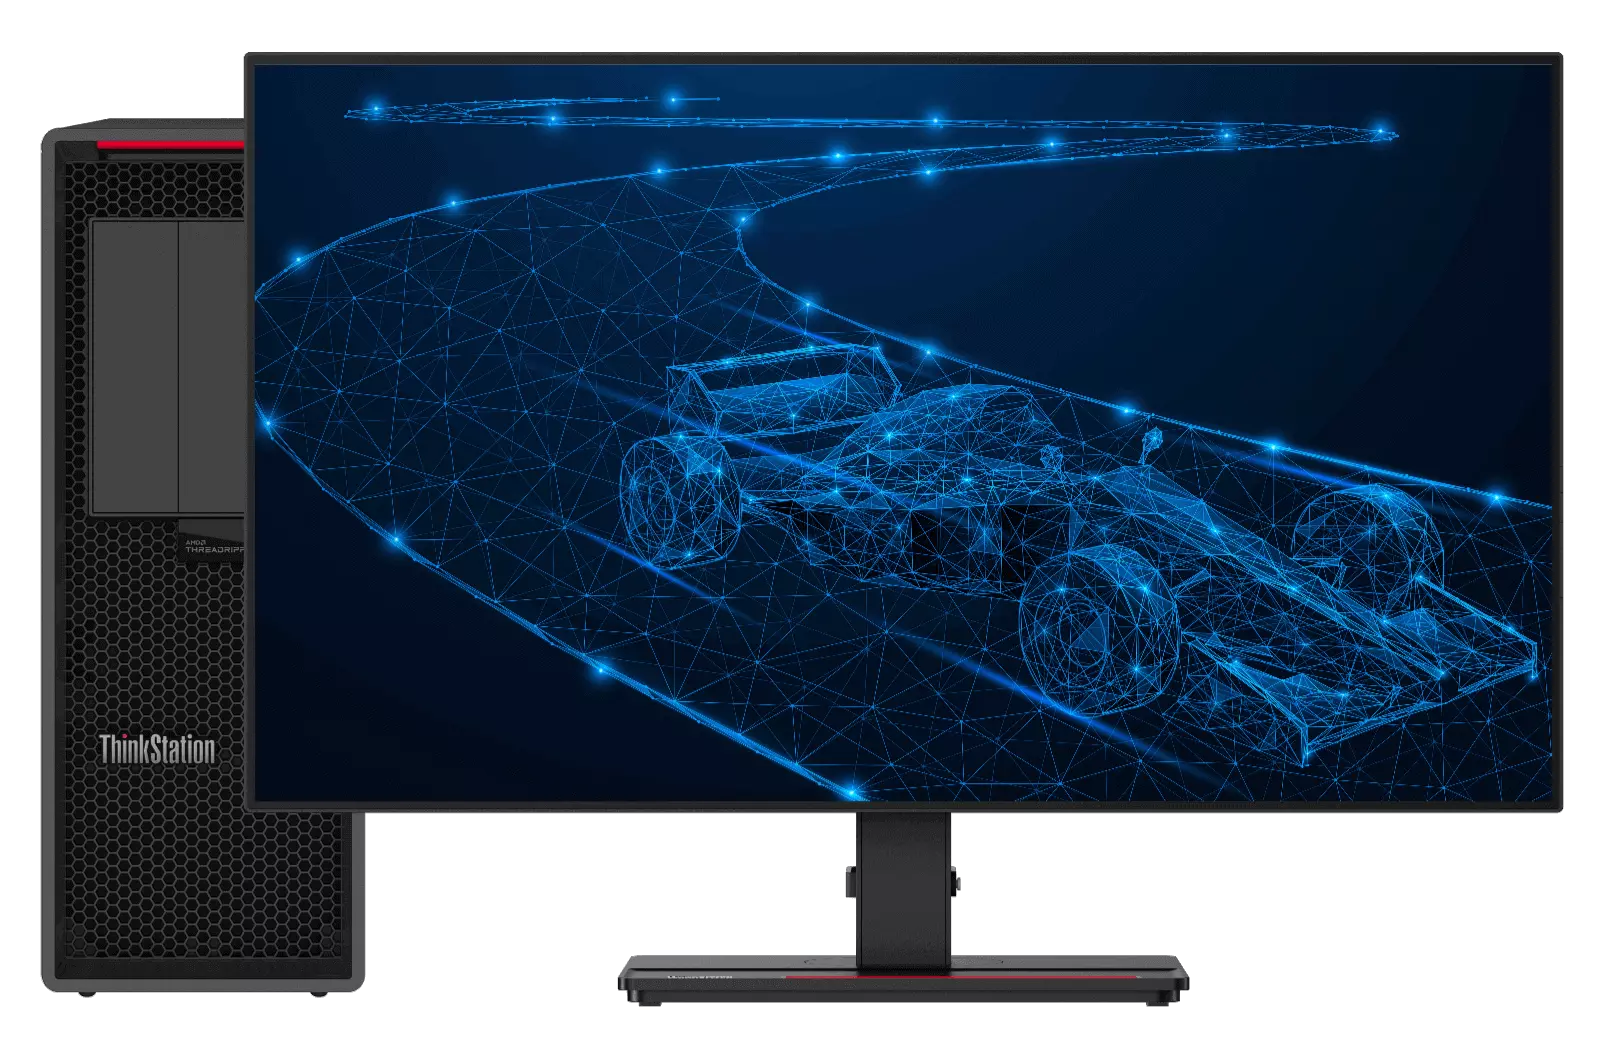 Lenovo ThinkStation egy F1-es autó tervrajzaival a versenypályán a képernyőn.